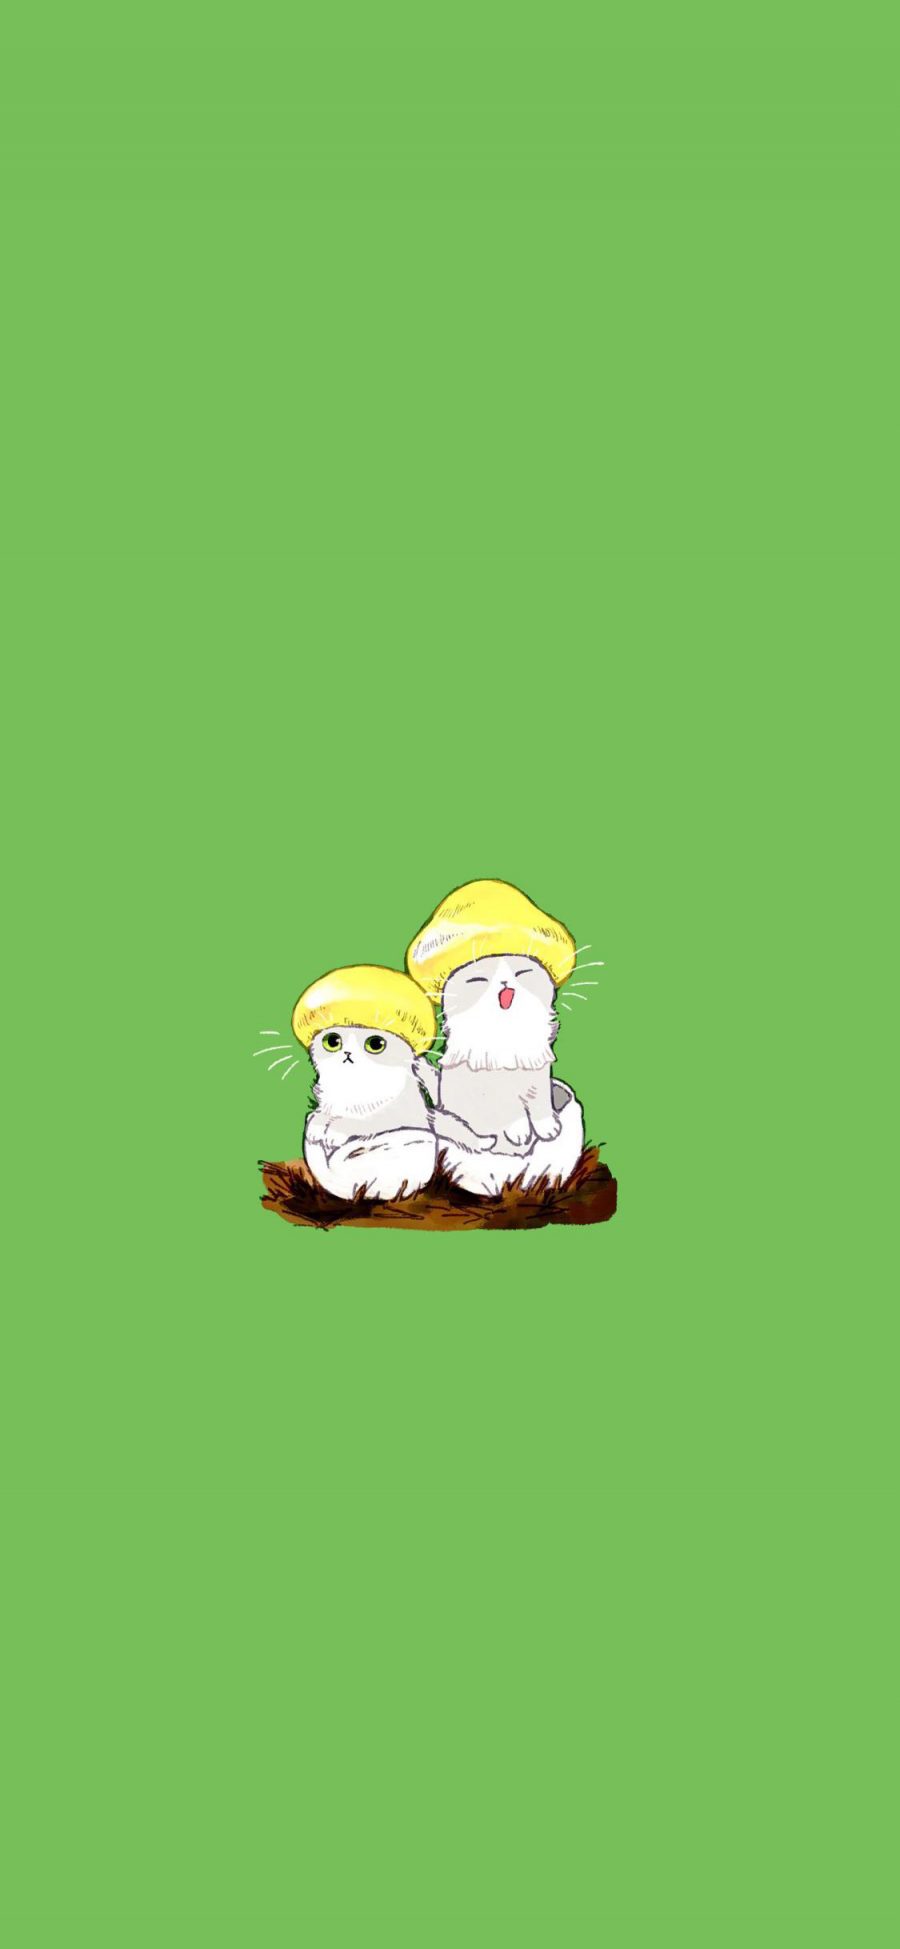 [2436×1125]绿色背景 卡通 猫咪 蘑菇 苹果手机动漫壁纸图片